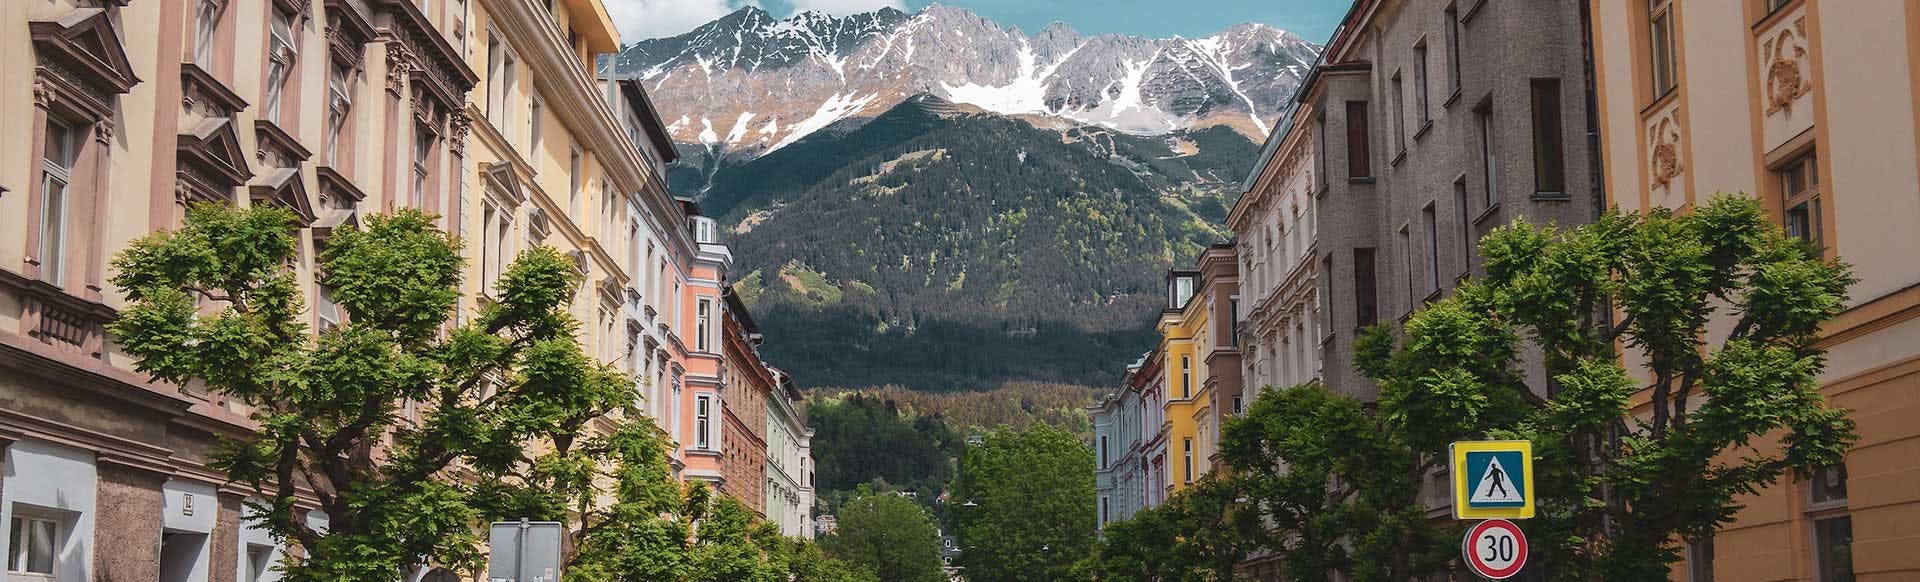 Search Hotels in Austria